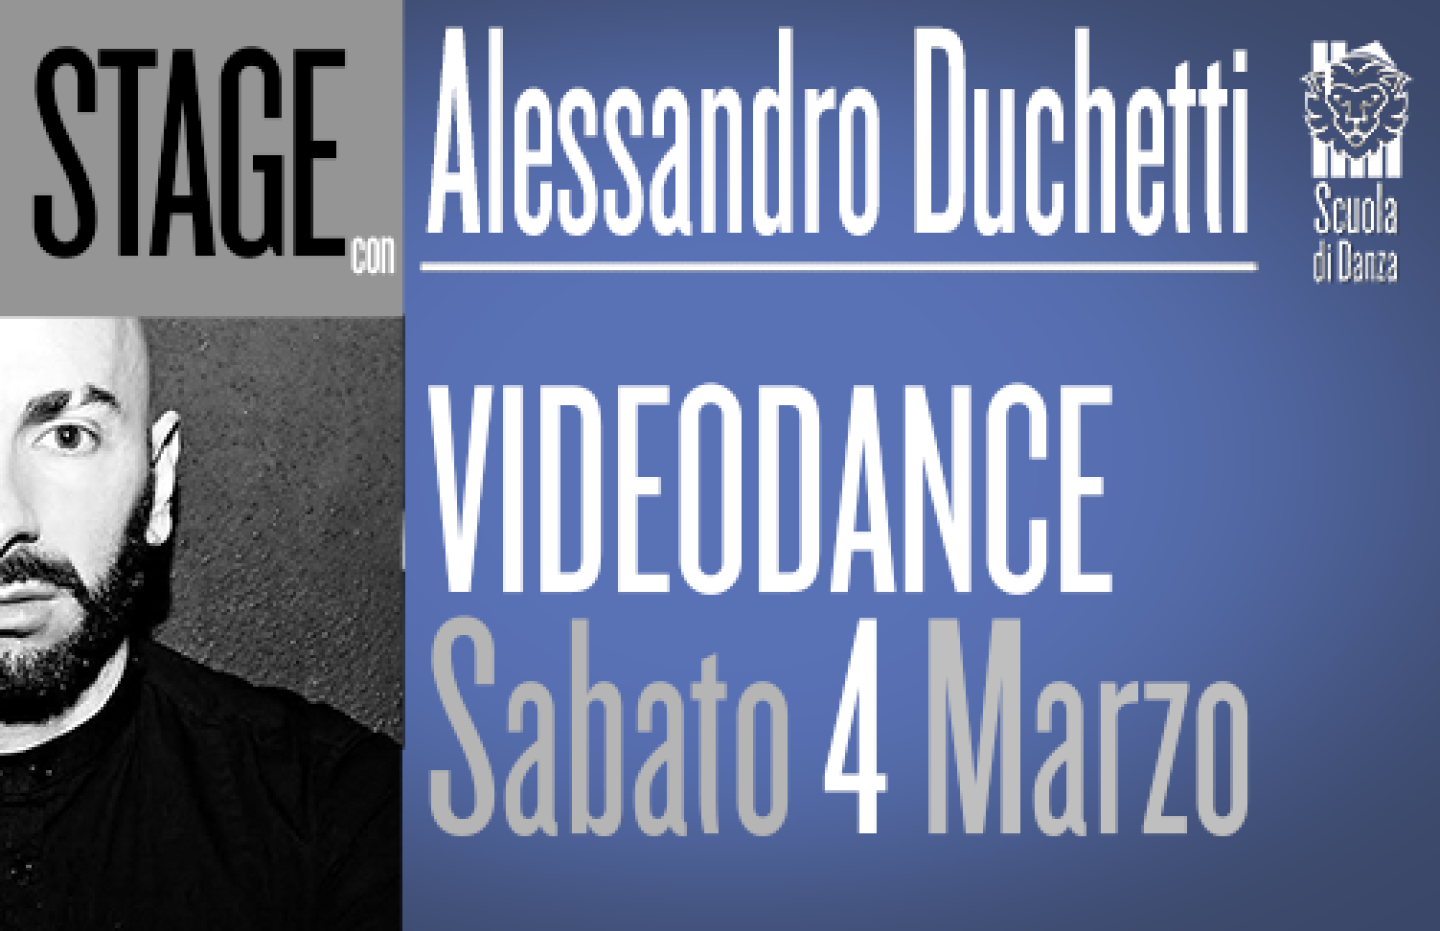 4MARZO-ALESSANDRO-DUCHETTI-Videodance-newsCOP